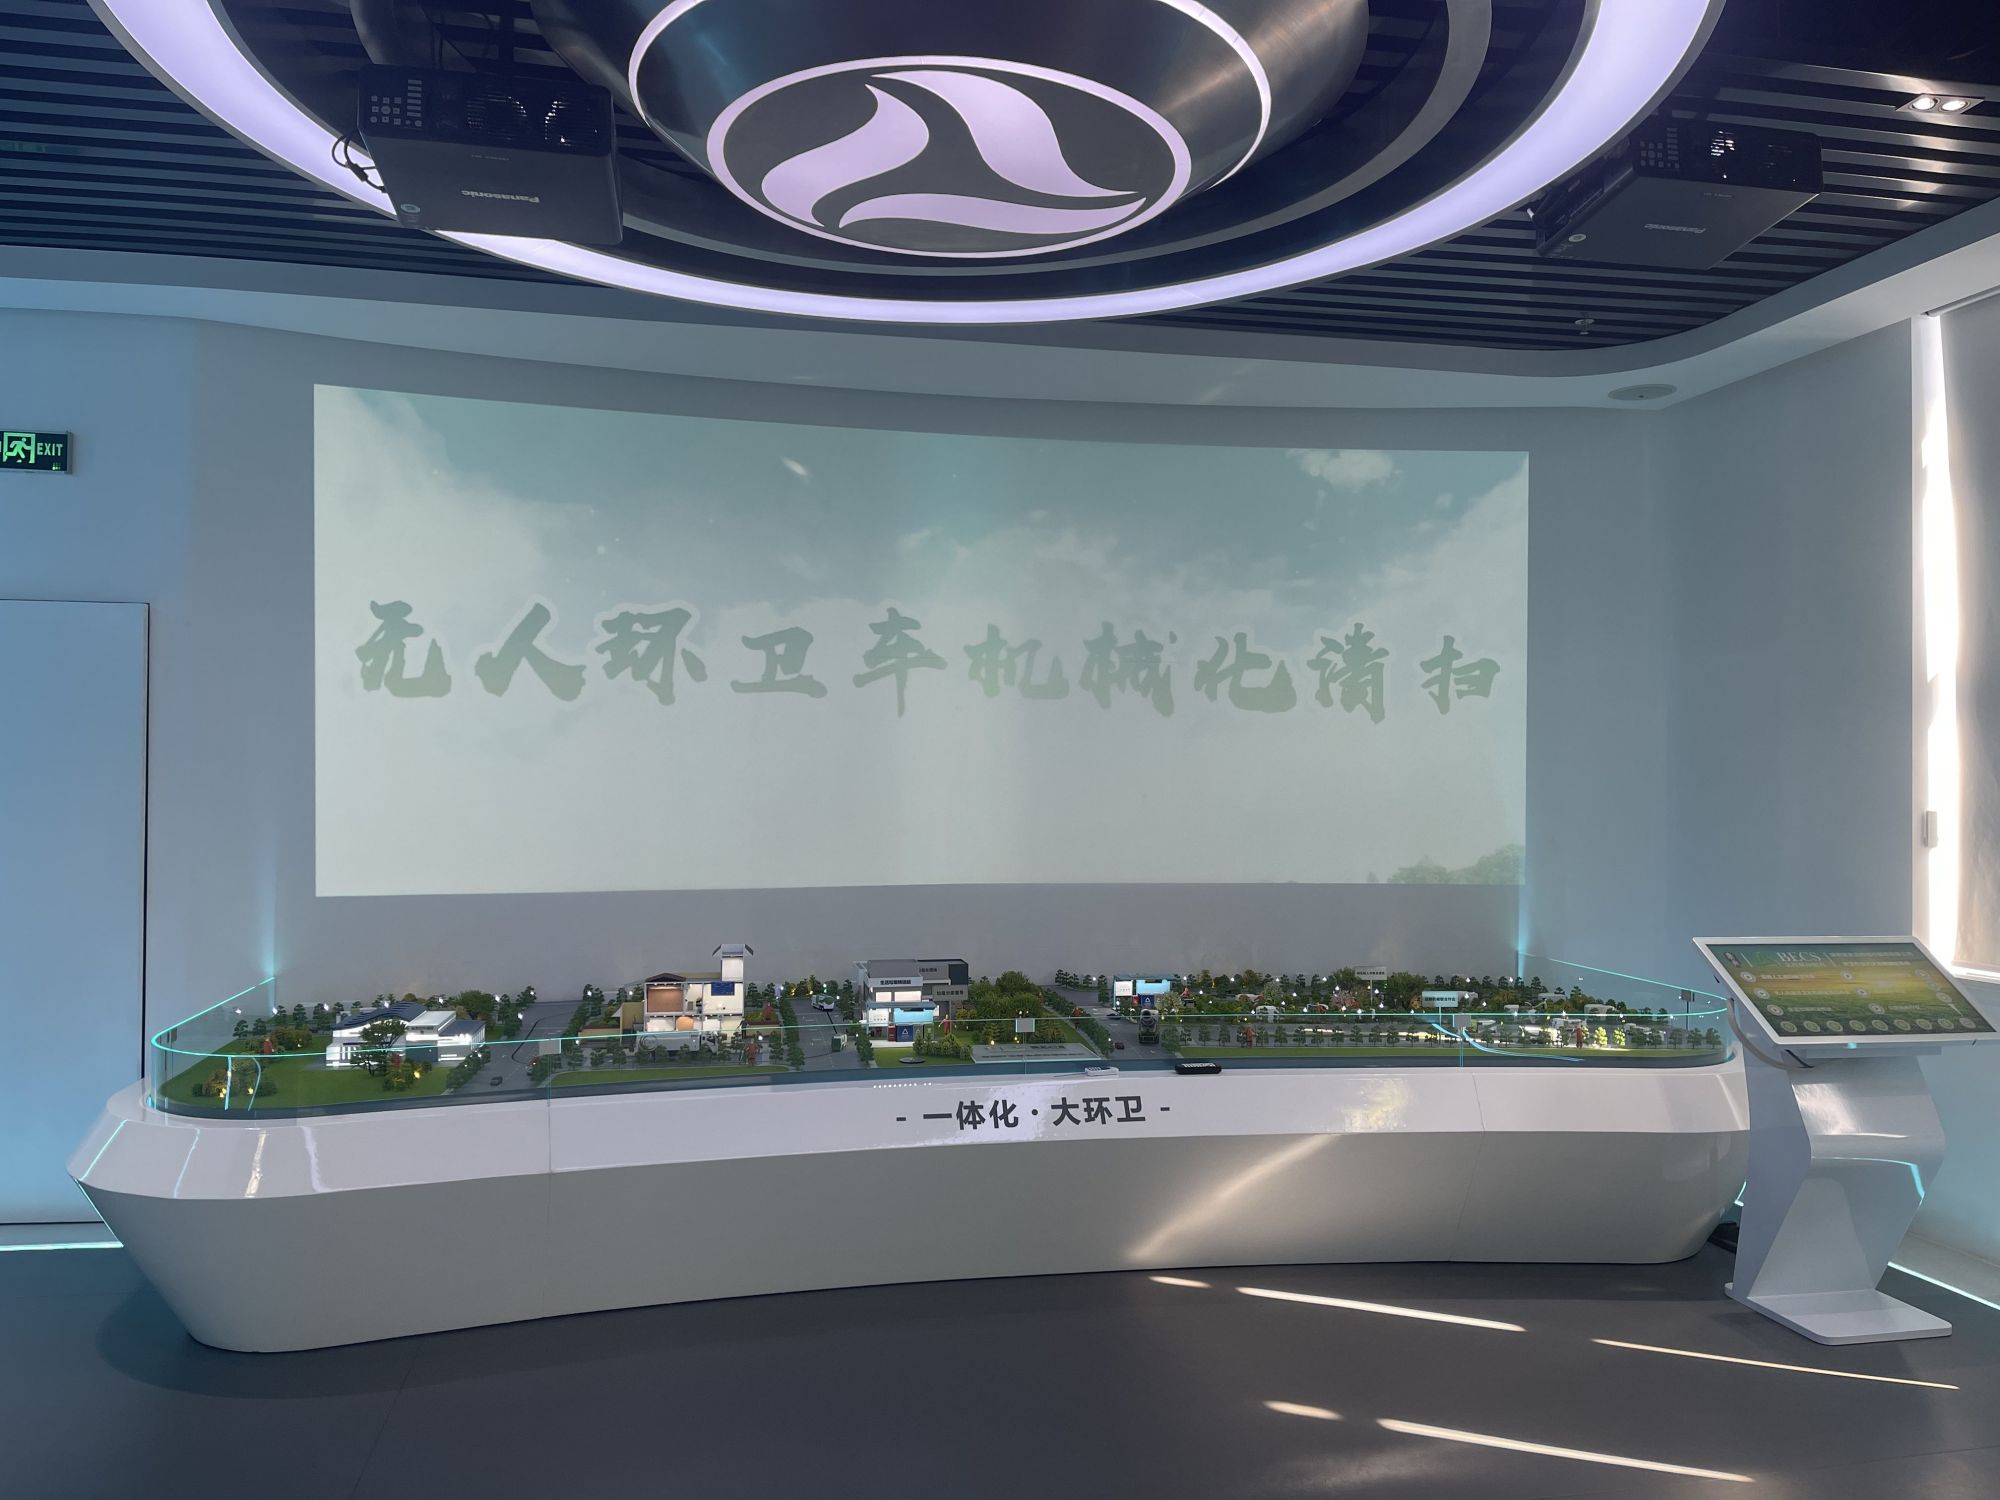 北控城市服务——北京2022年冬奥会的“智慧化环卫”